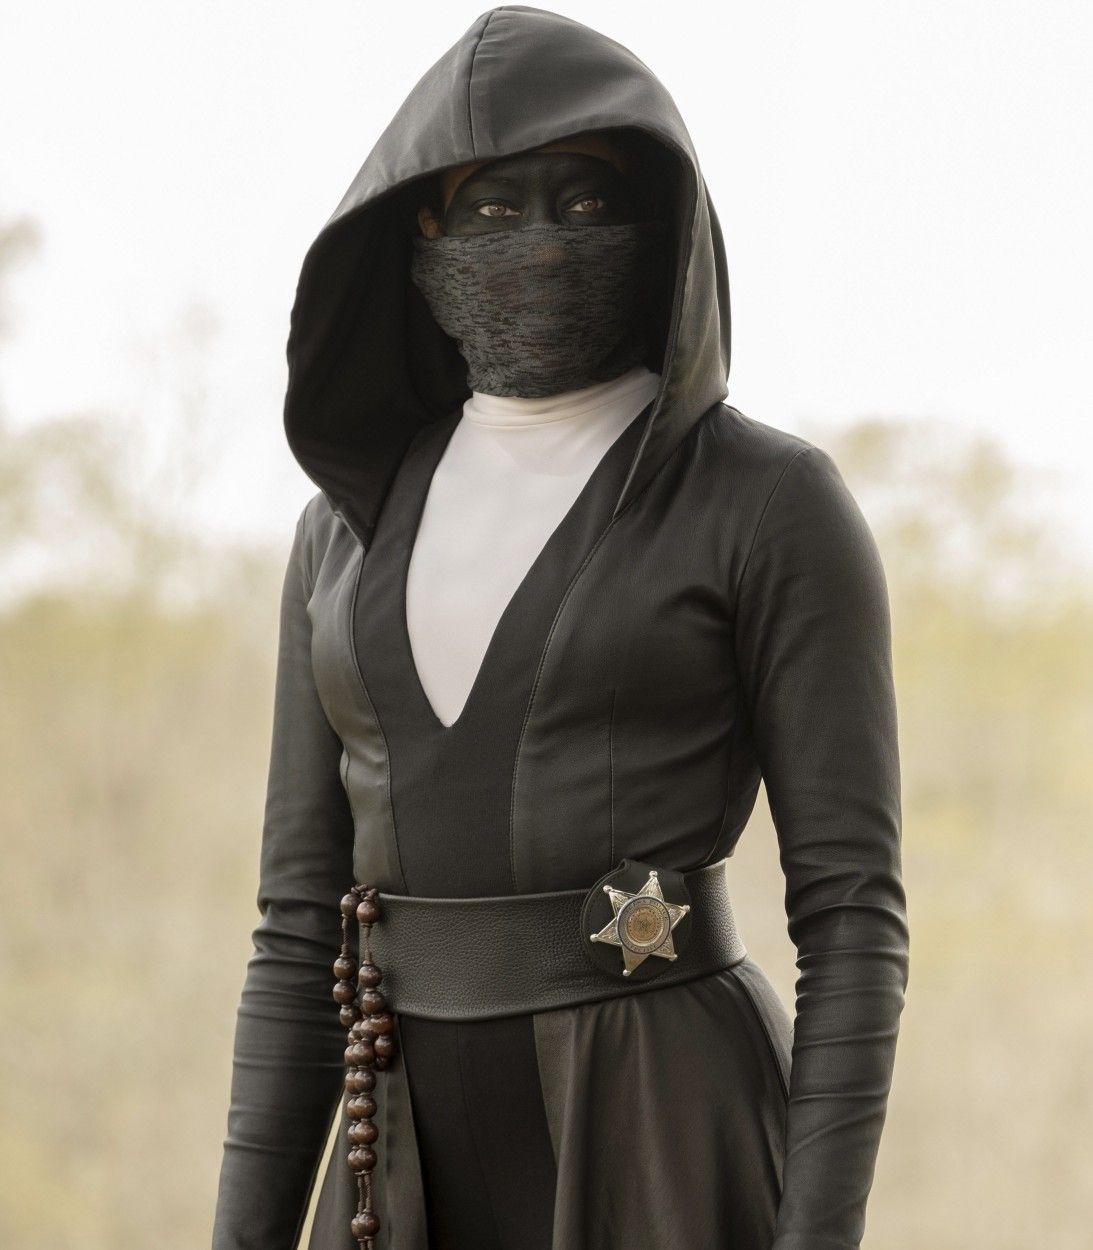 Regina King in Watchmen TV Show Vertical